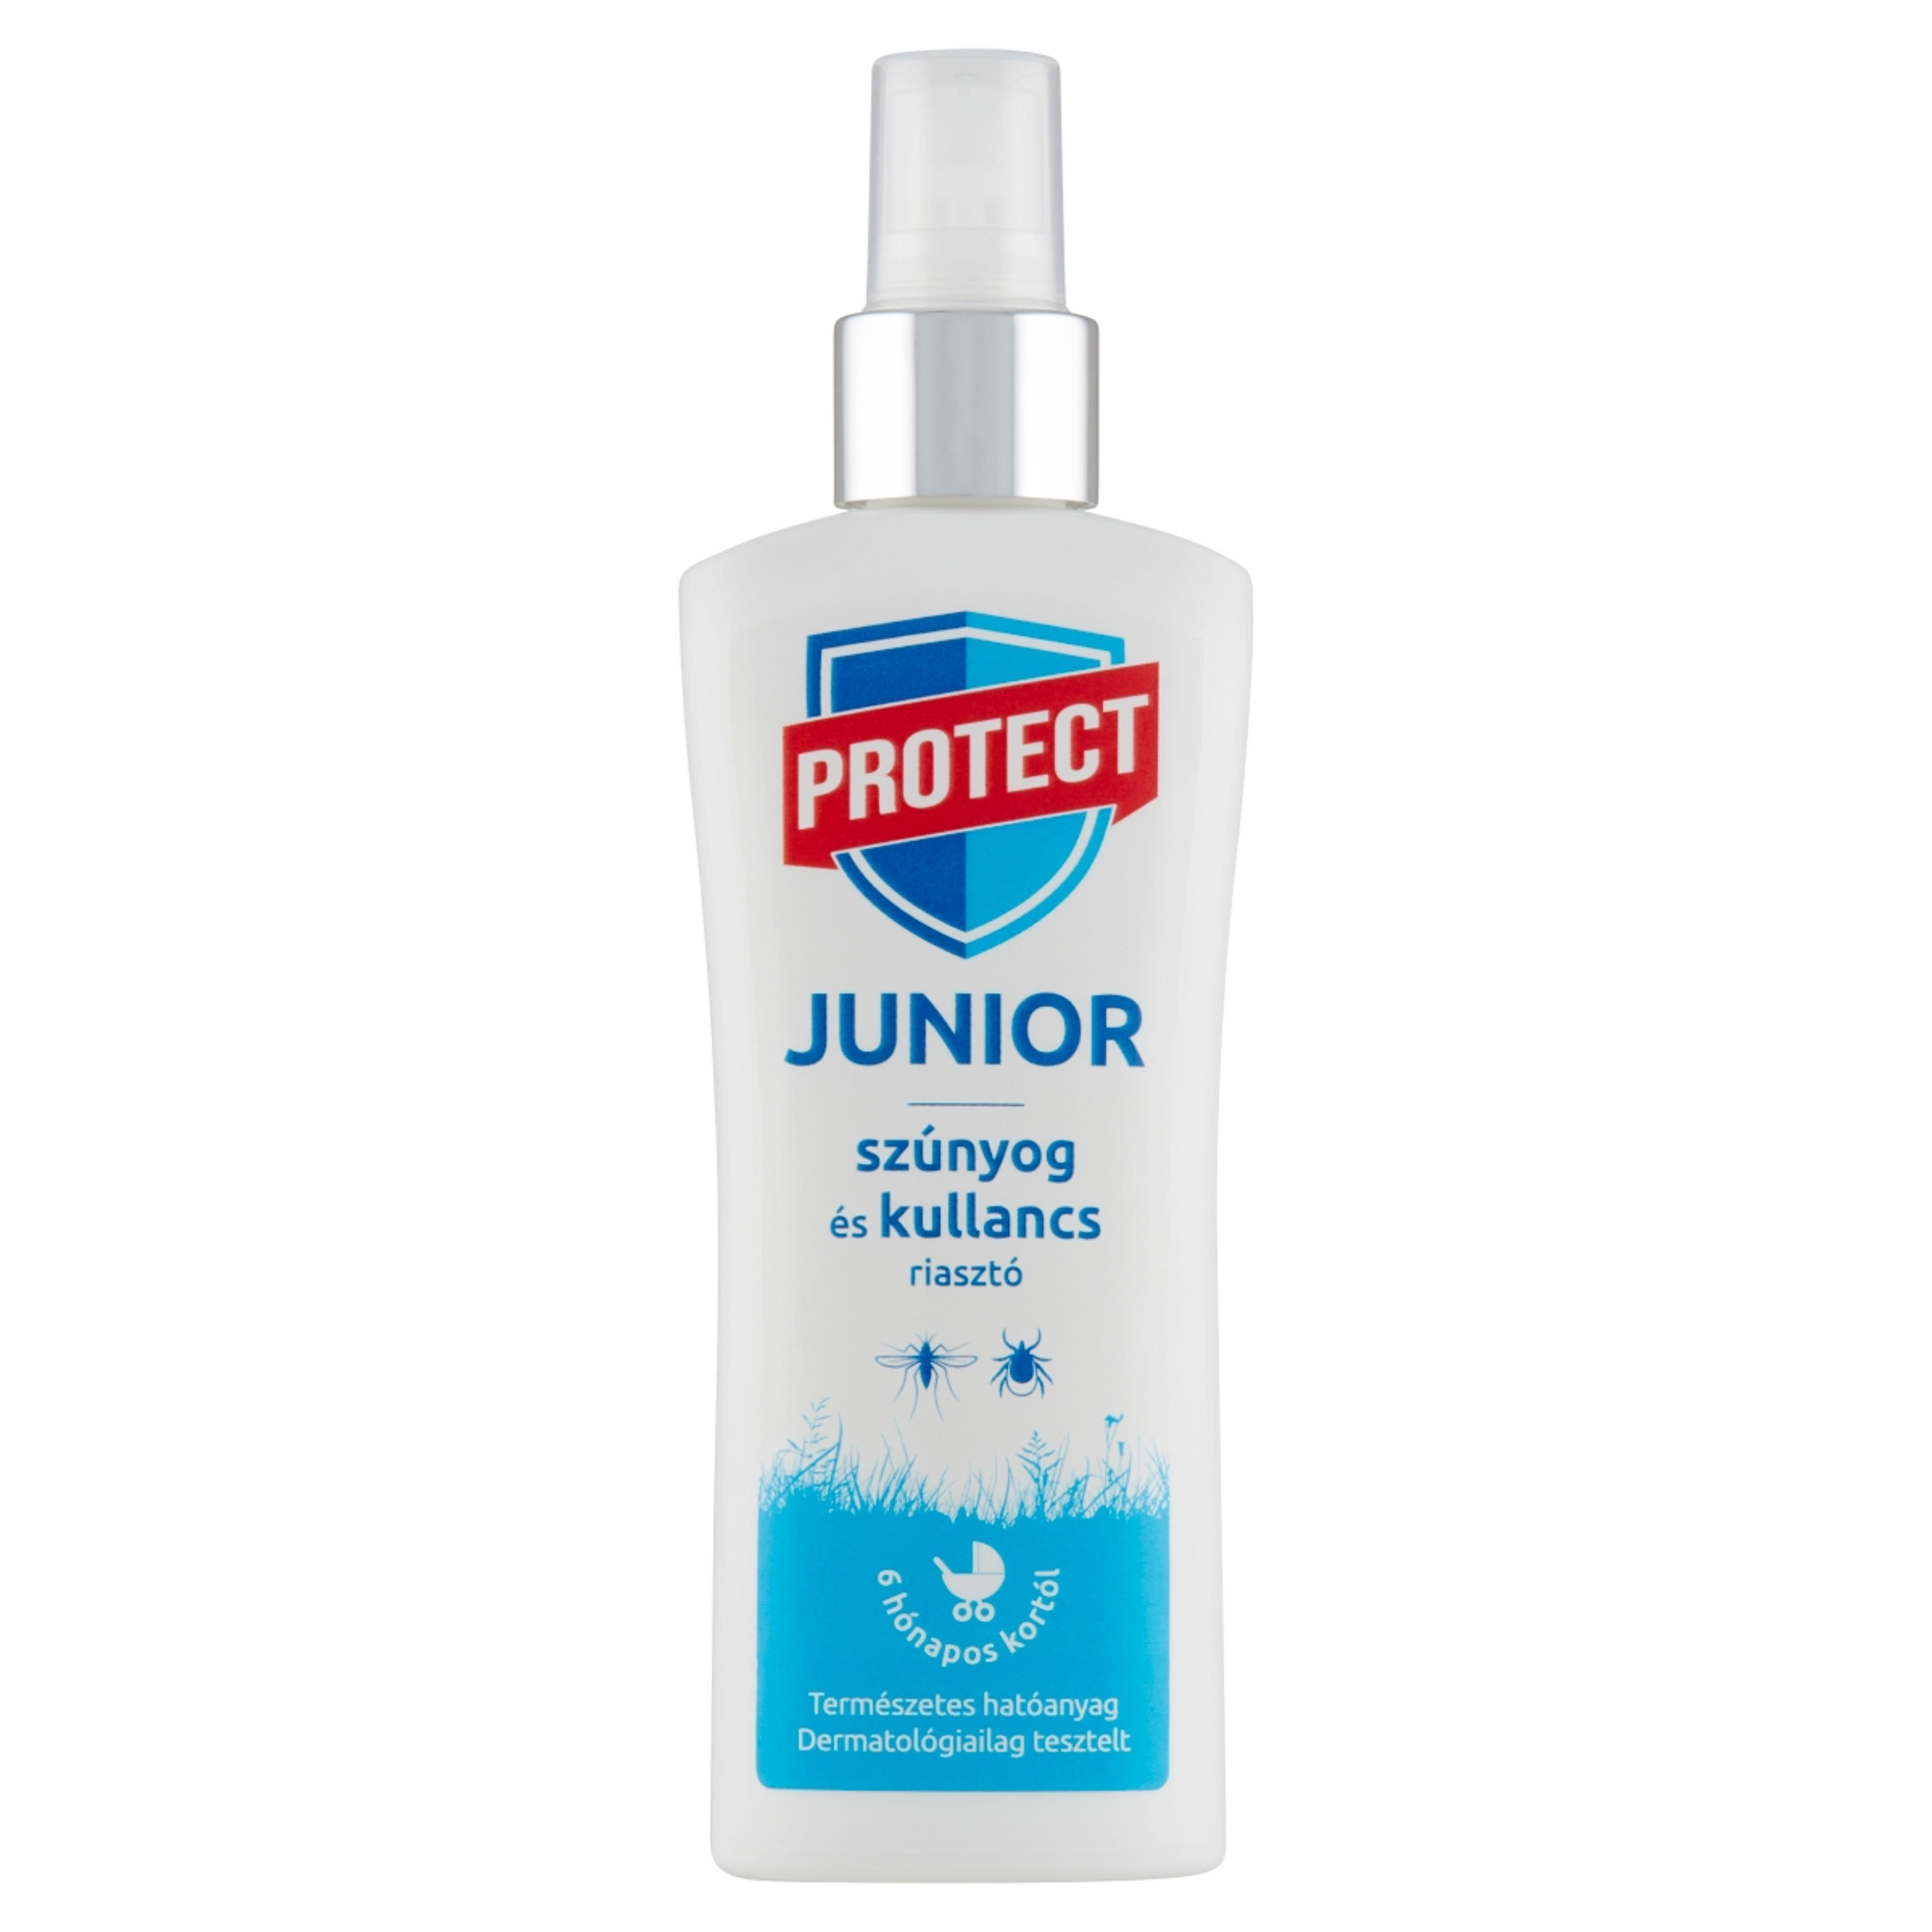 Protect Junior szúnyog és kullancsriasztó permet - 100 ml